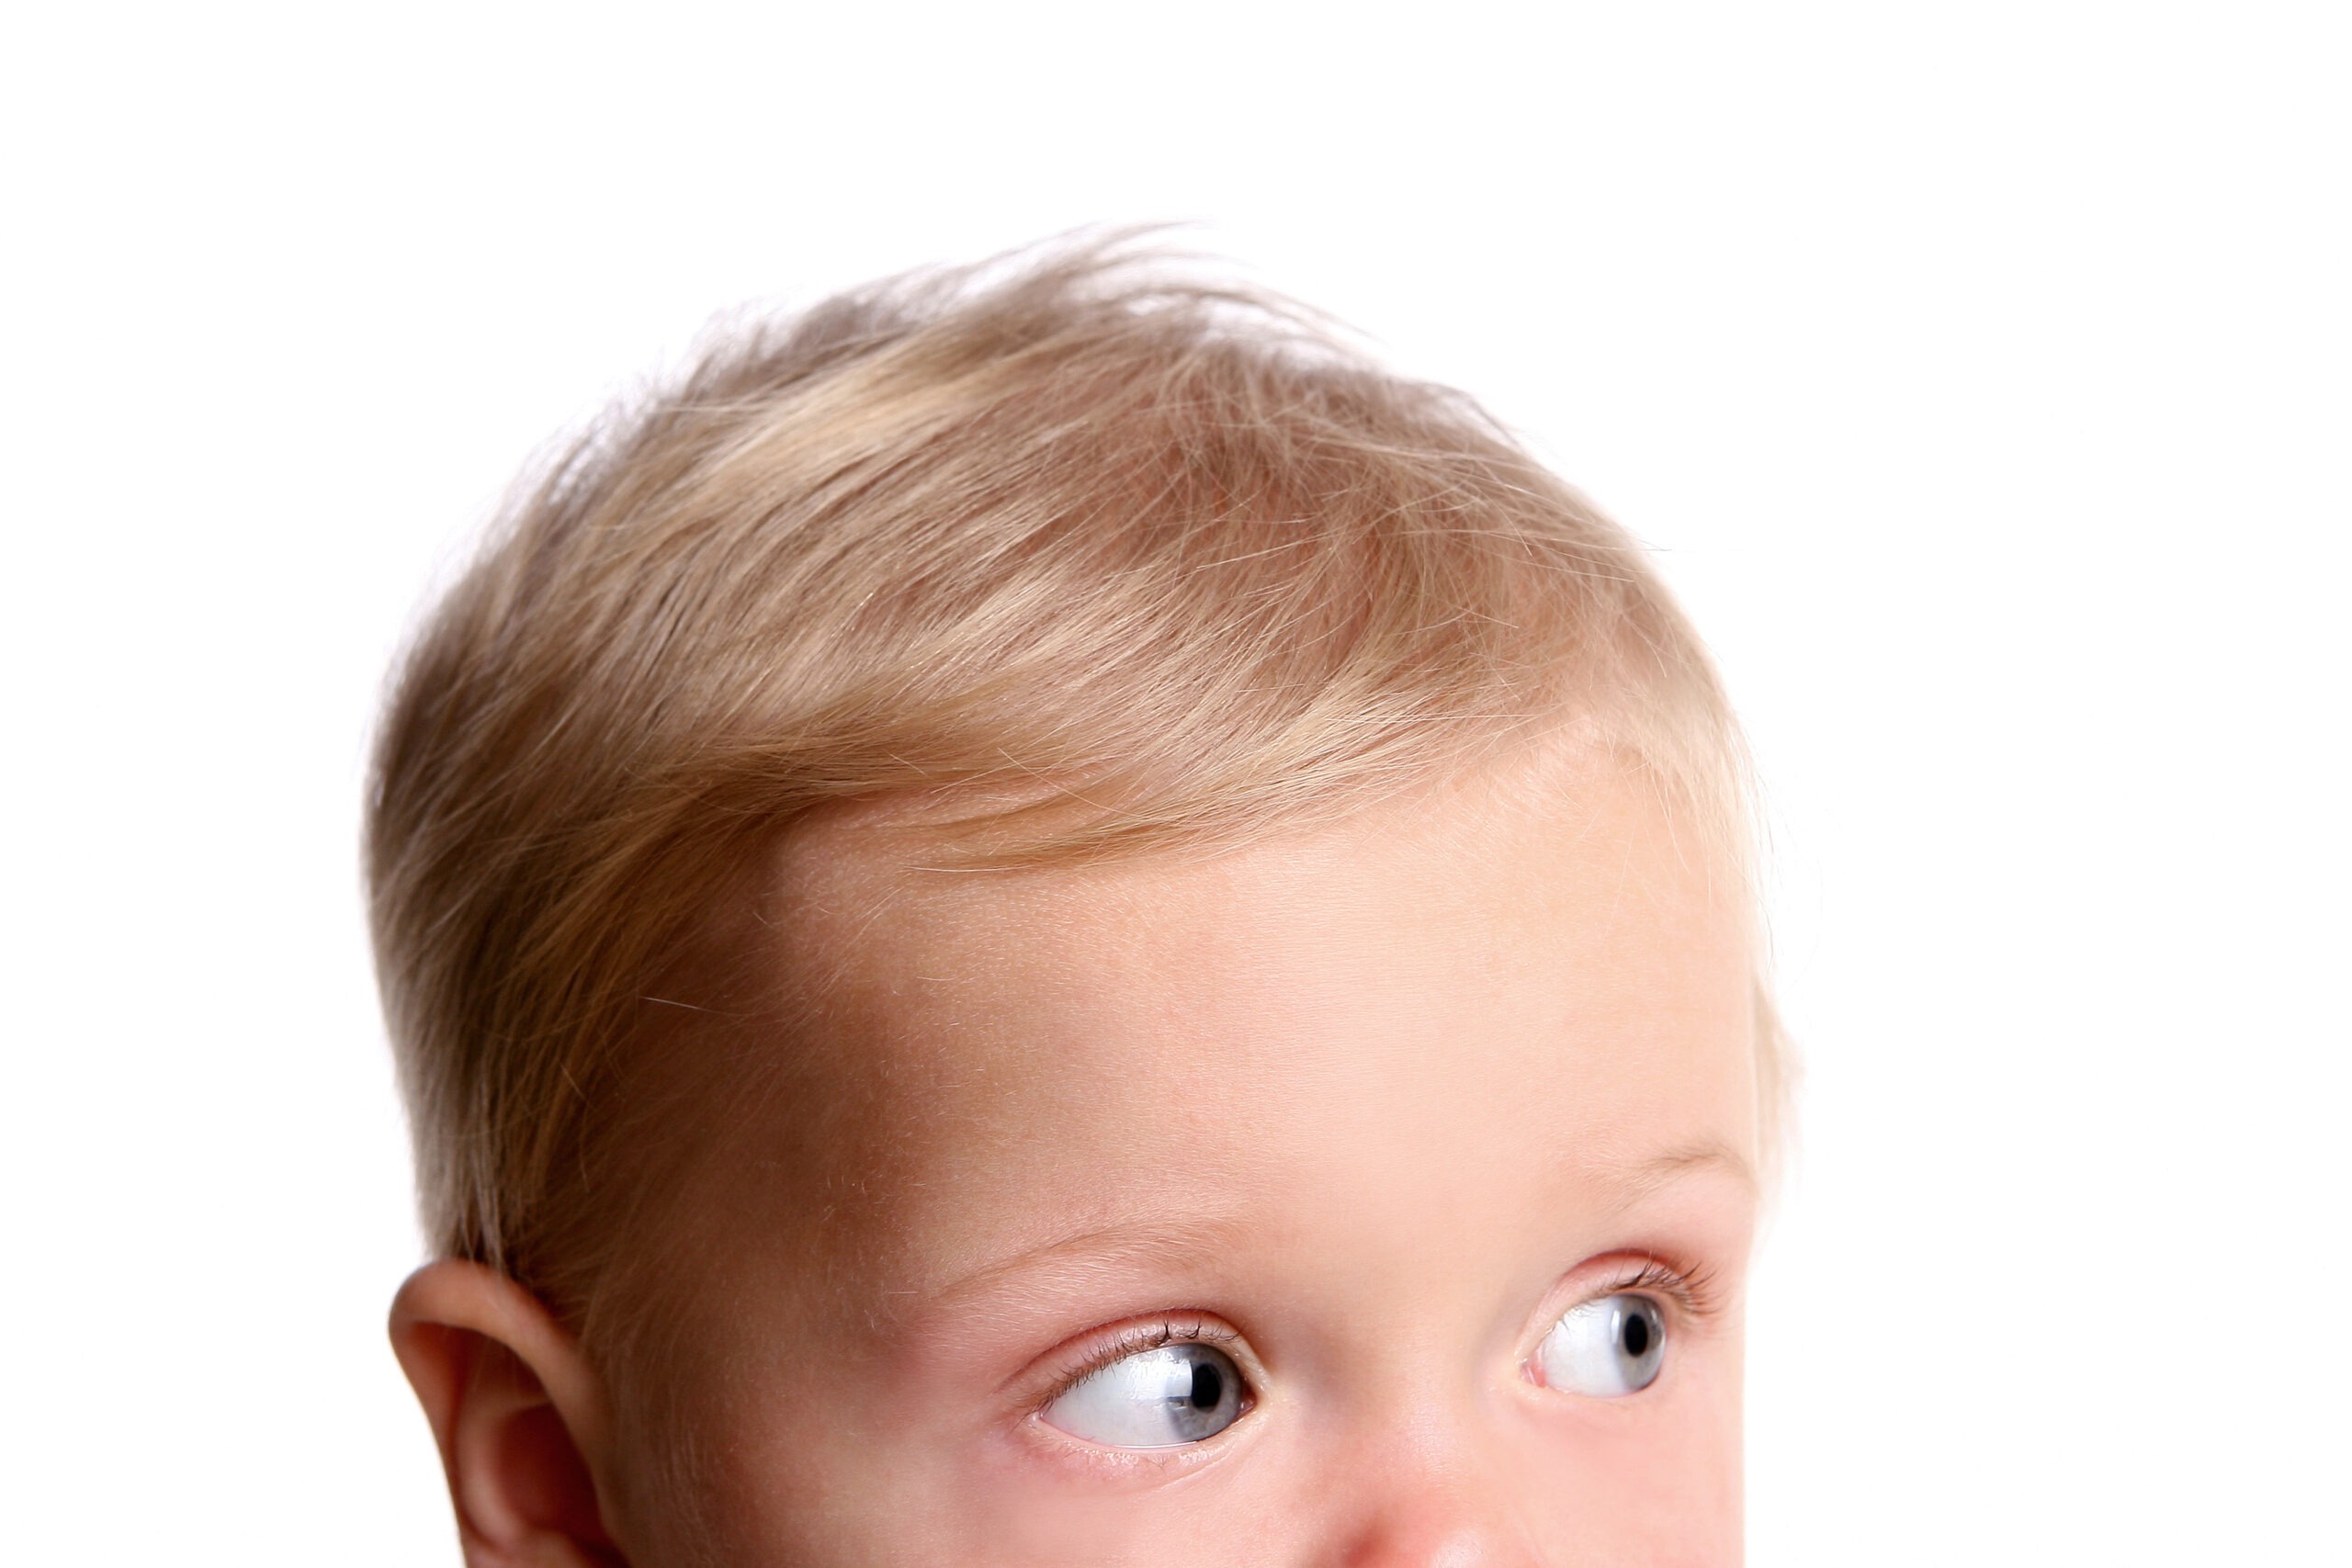 Plagiocefalia, czyli krzywa główka u niemowlaka, asymetria czaszki. Widoczna górna część głowy dziecka / niemowlaka. 